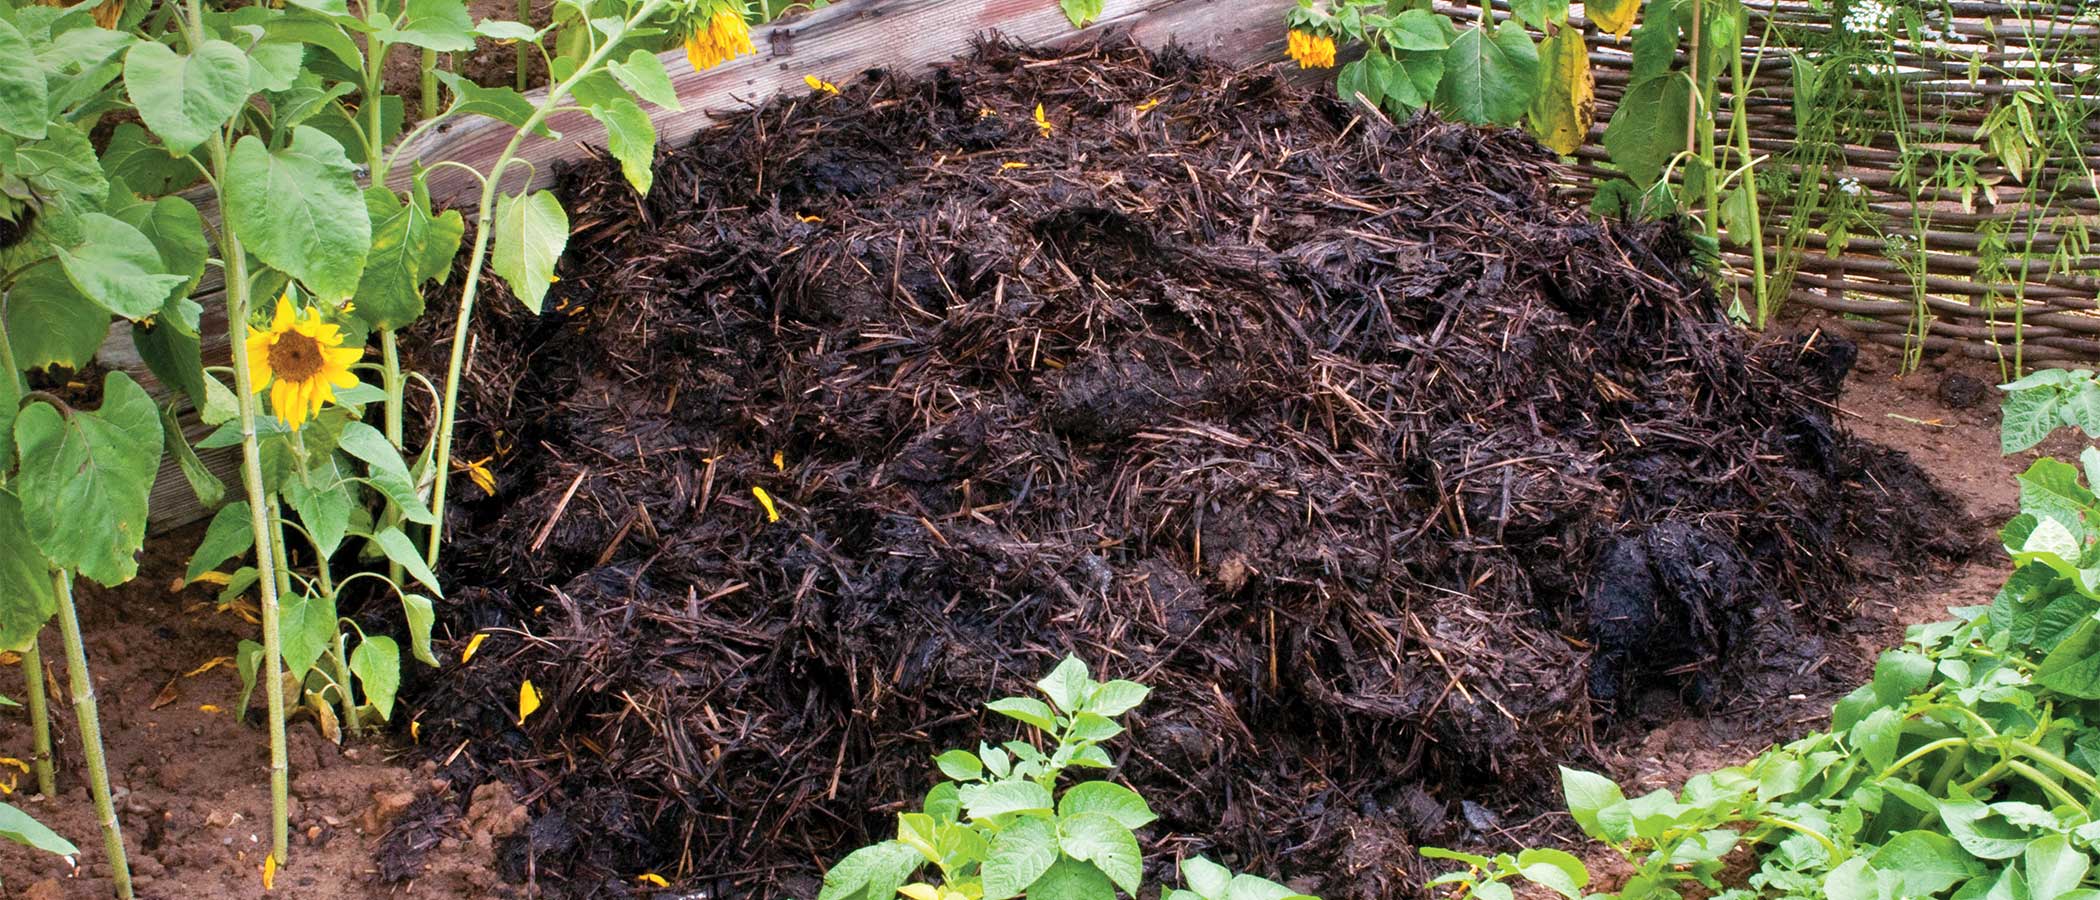 Compost pile in a home garden.